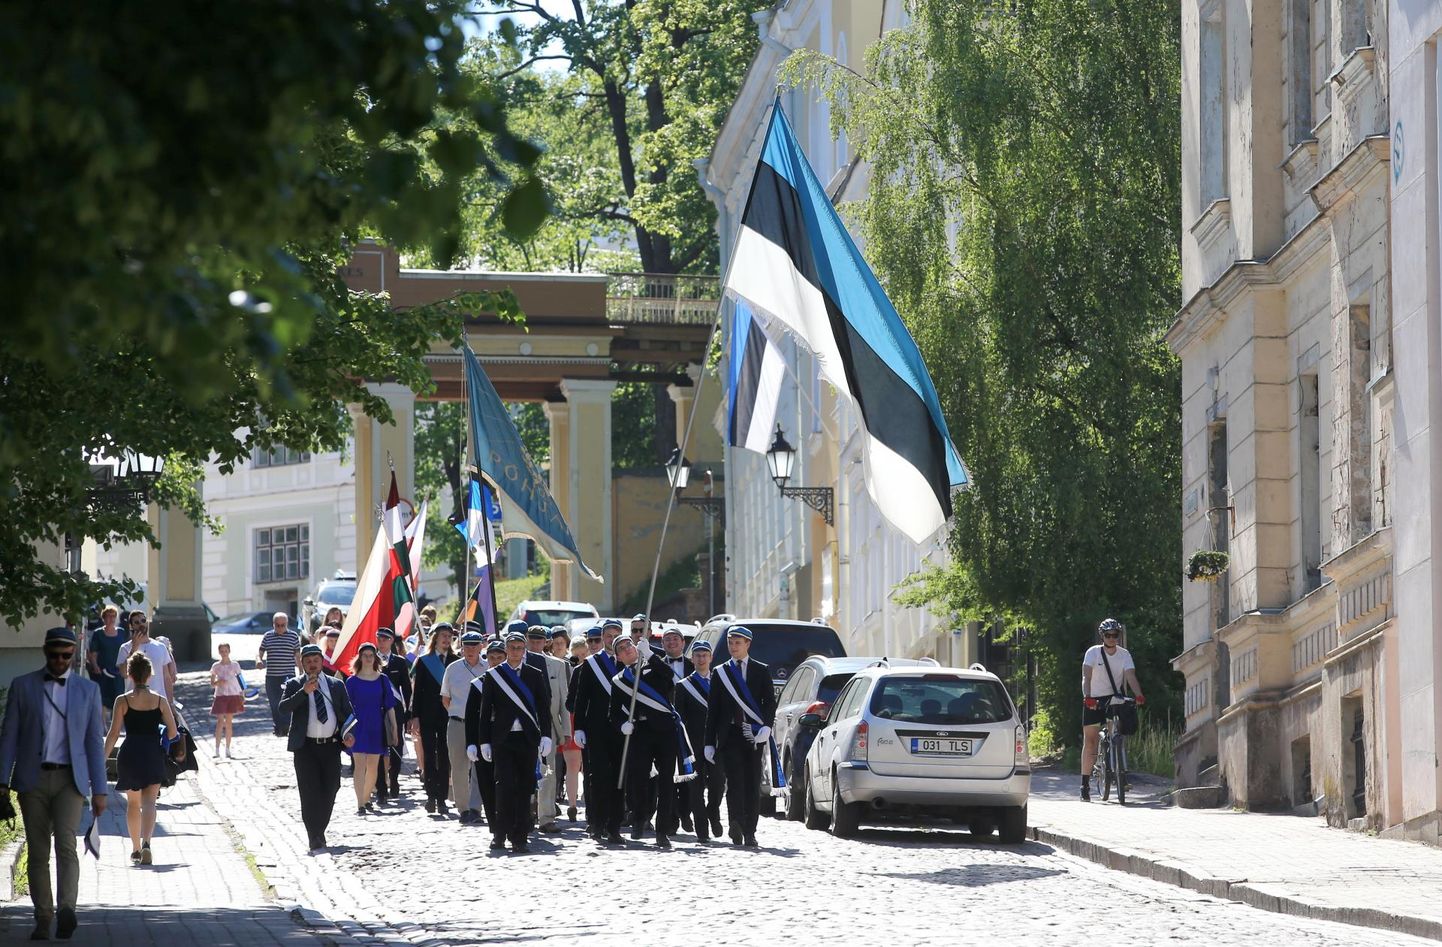 Eesti lipu 135. aastapäevale pühendatud rongkäiku vedasid Eesti Üliõpilaste Seltsi liikmed.
Margus Ansu